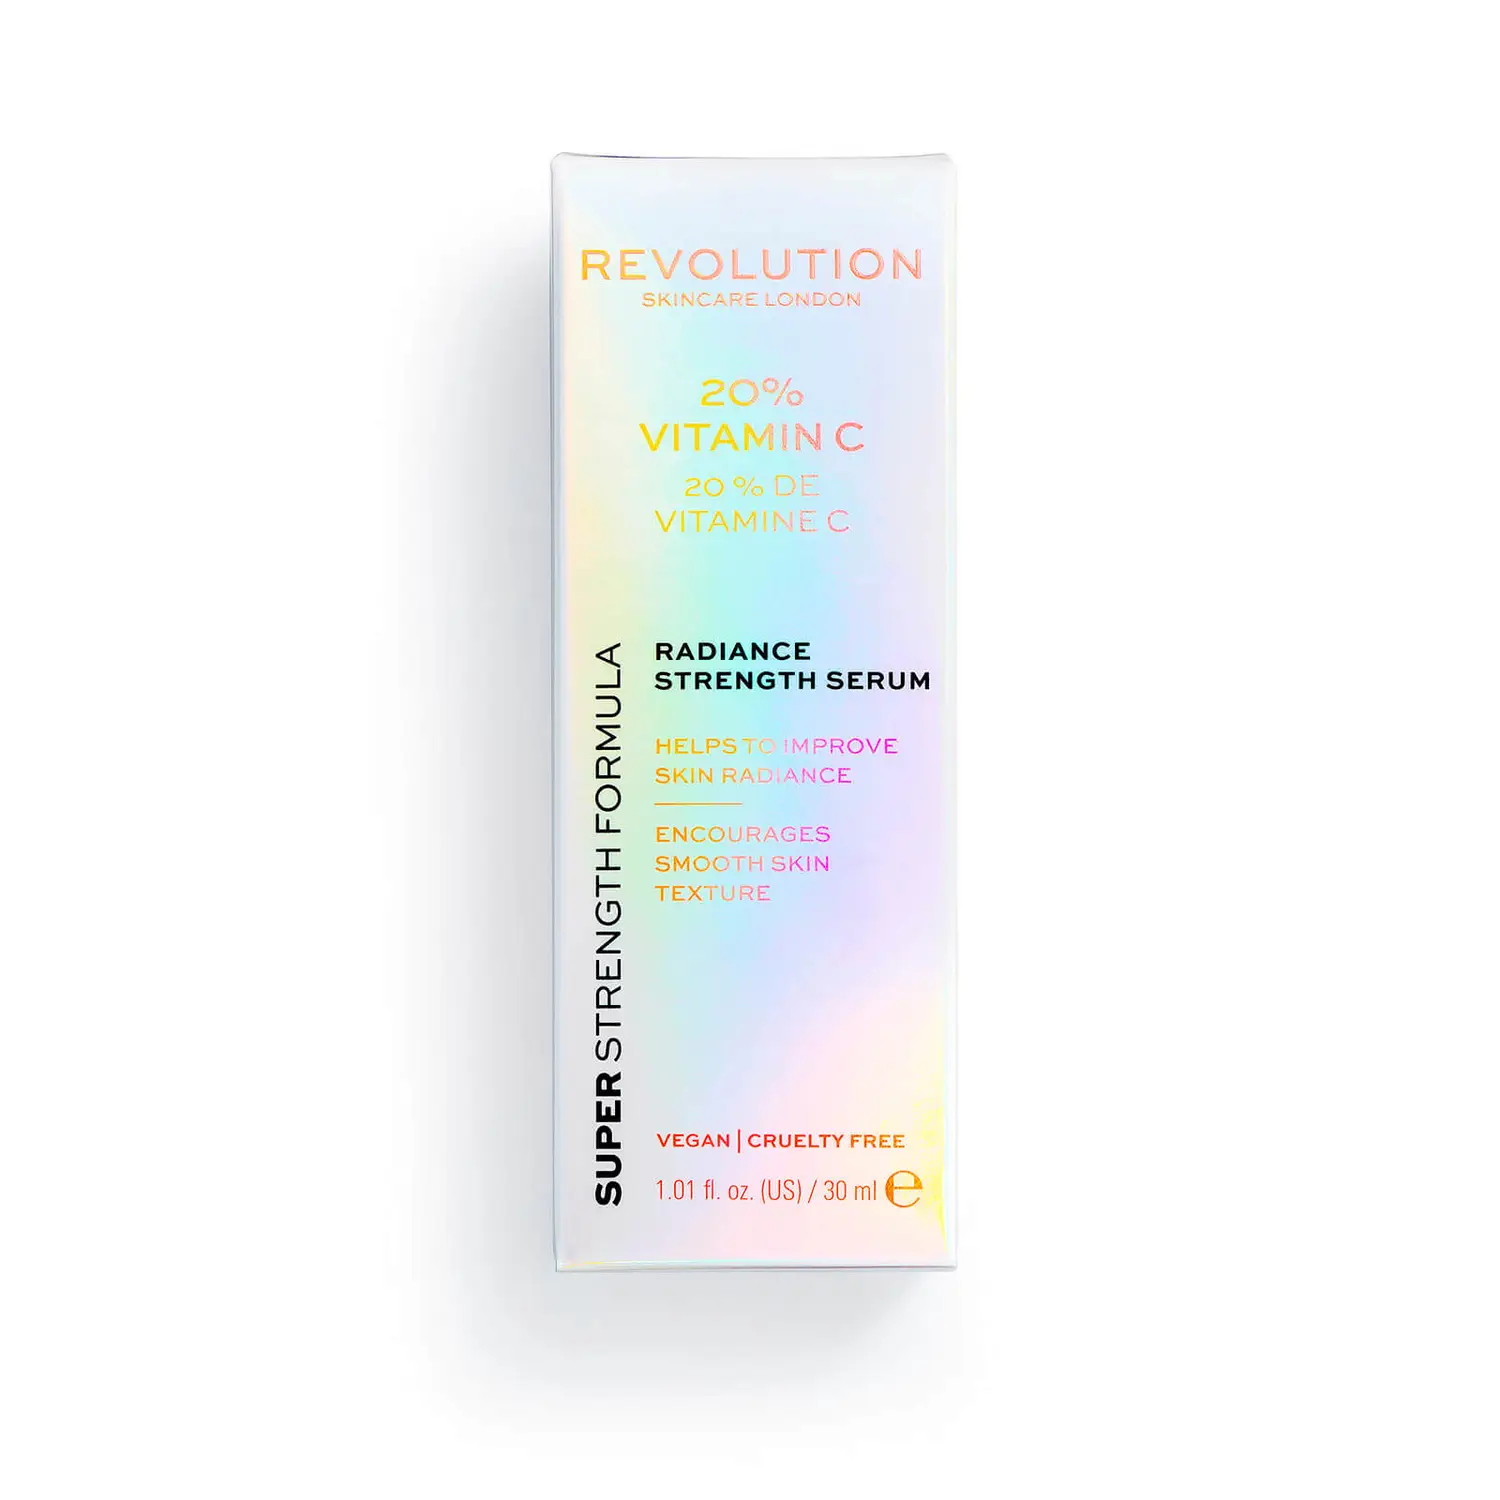 Revolution Skincare 20% Сыворотка с витамином С для сияния кожи сыворотка для лица relove revolution 10% vitamin c 20 мл